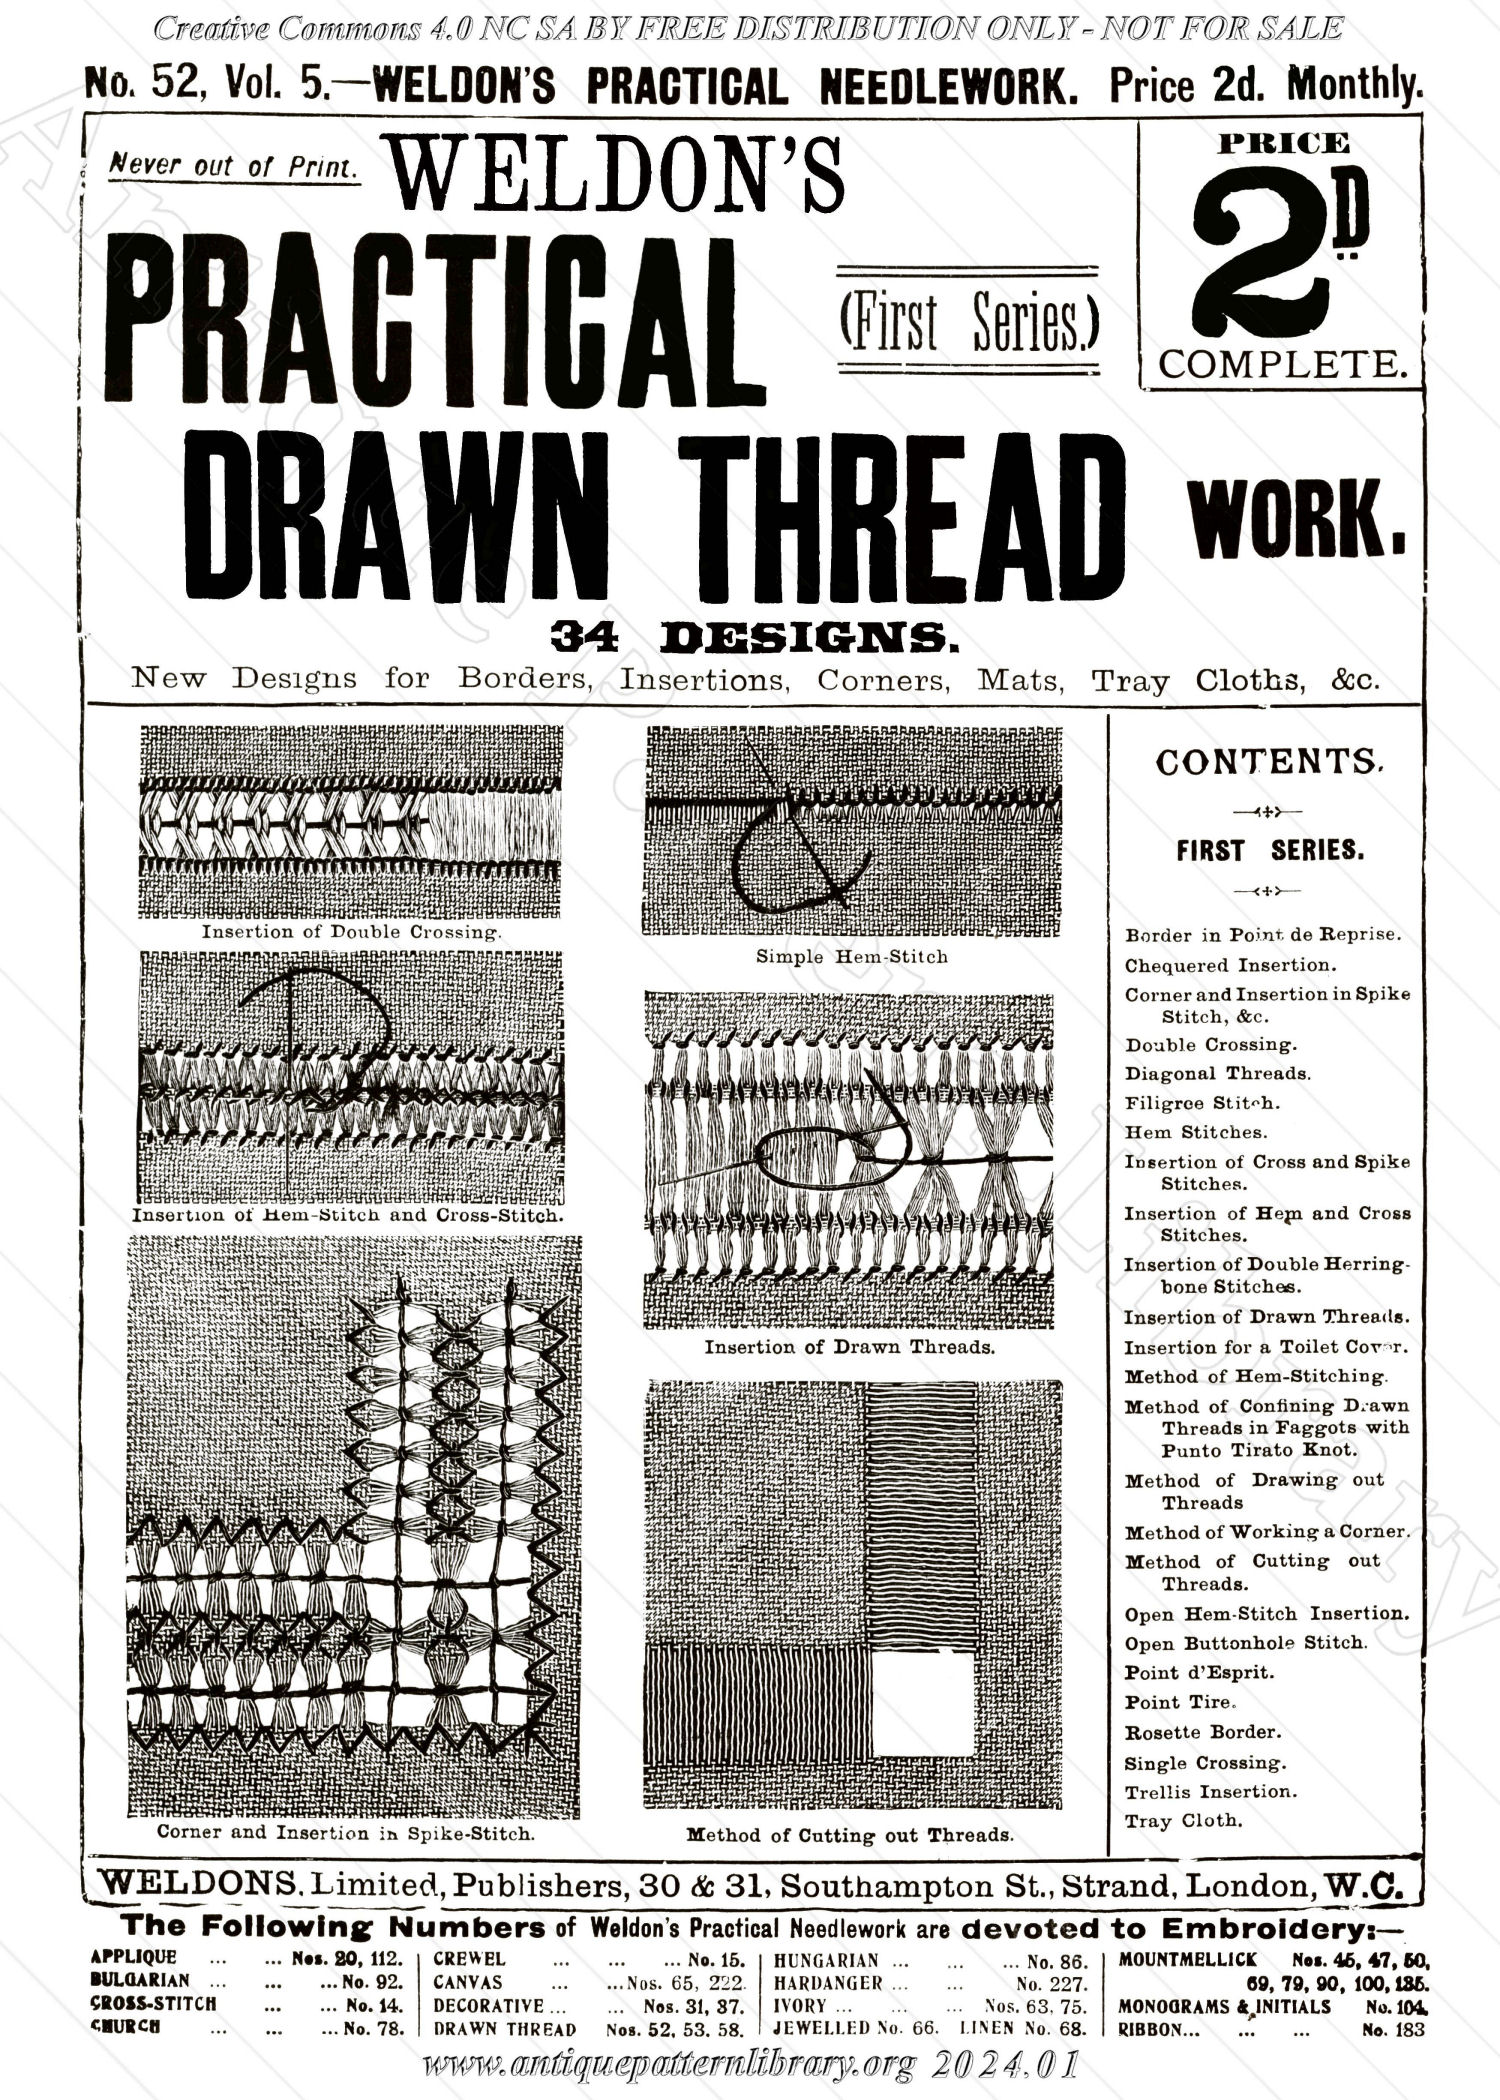 K-WK003 Practical Drawn Thread